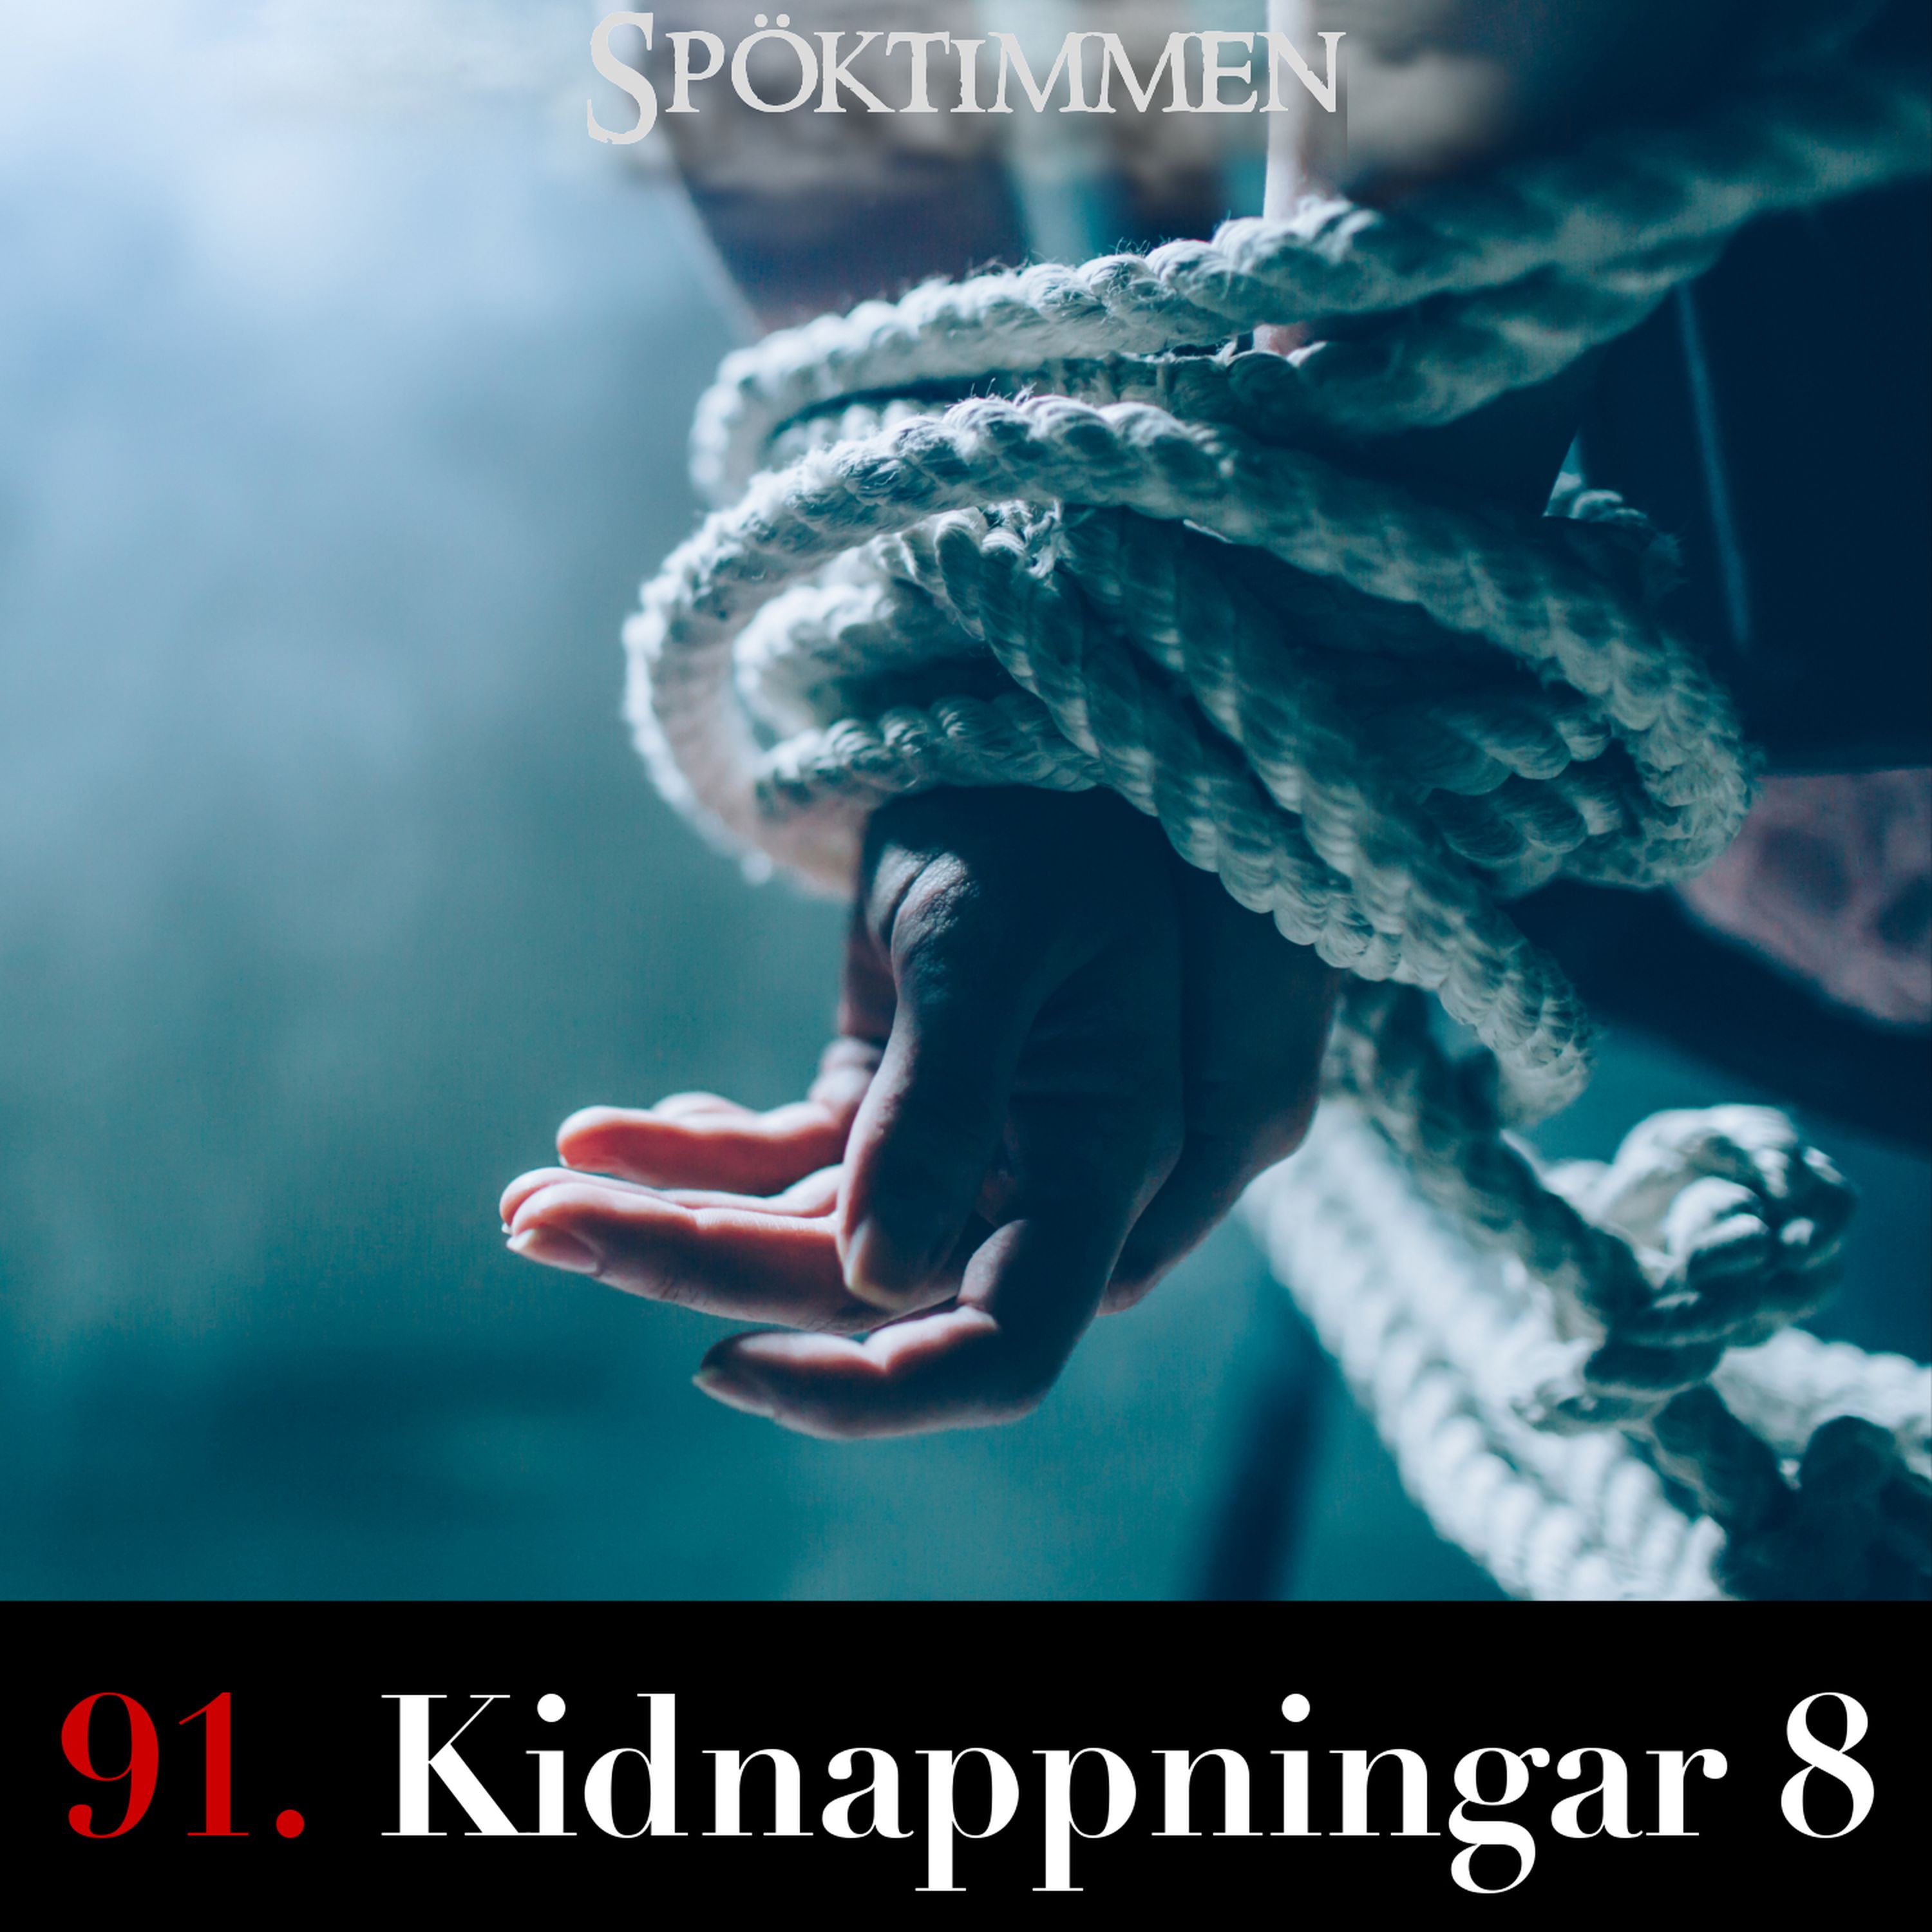 91. Kidnappningar 8